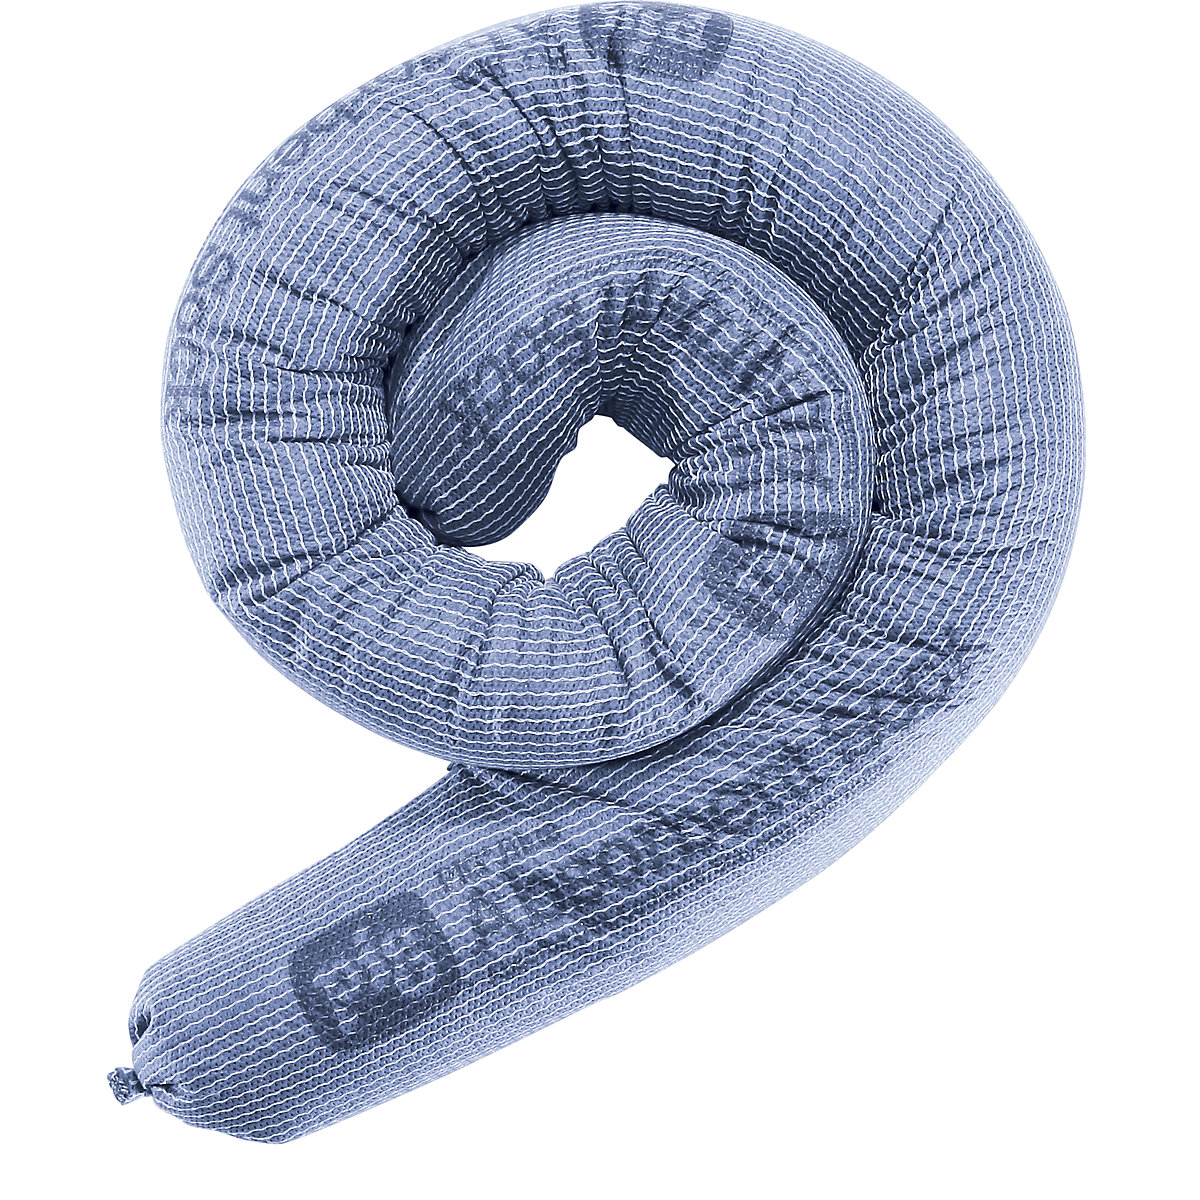 PIG – Univerzální nasákavá hadice ze sorpční textilie BLUE, bal.j. 12 ks, délka 1220 mm, Ø 80 mm